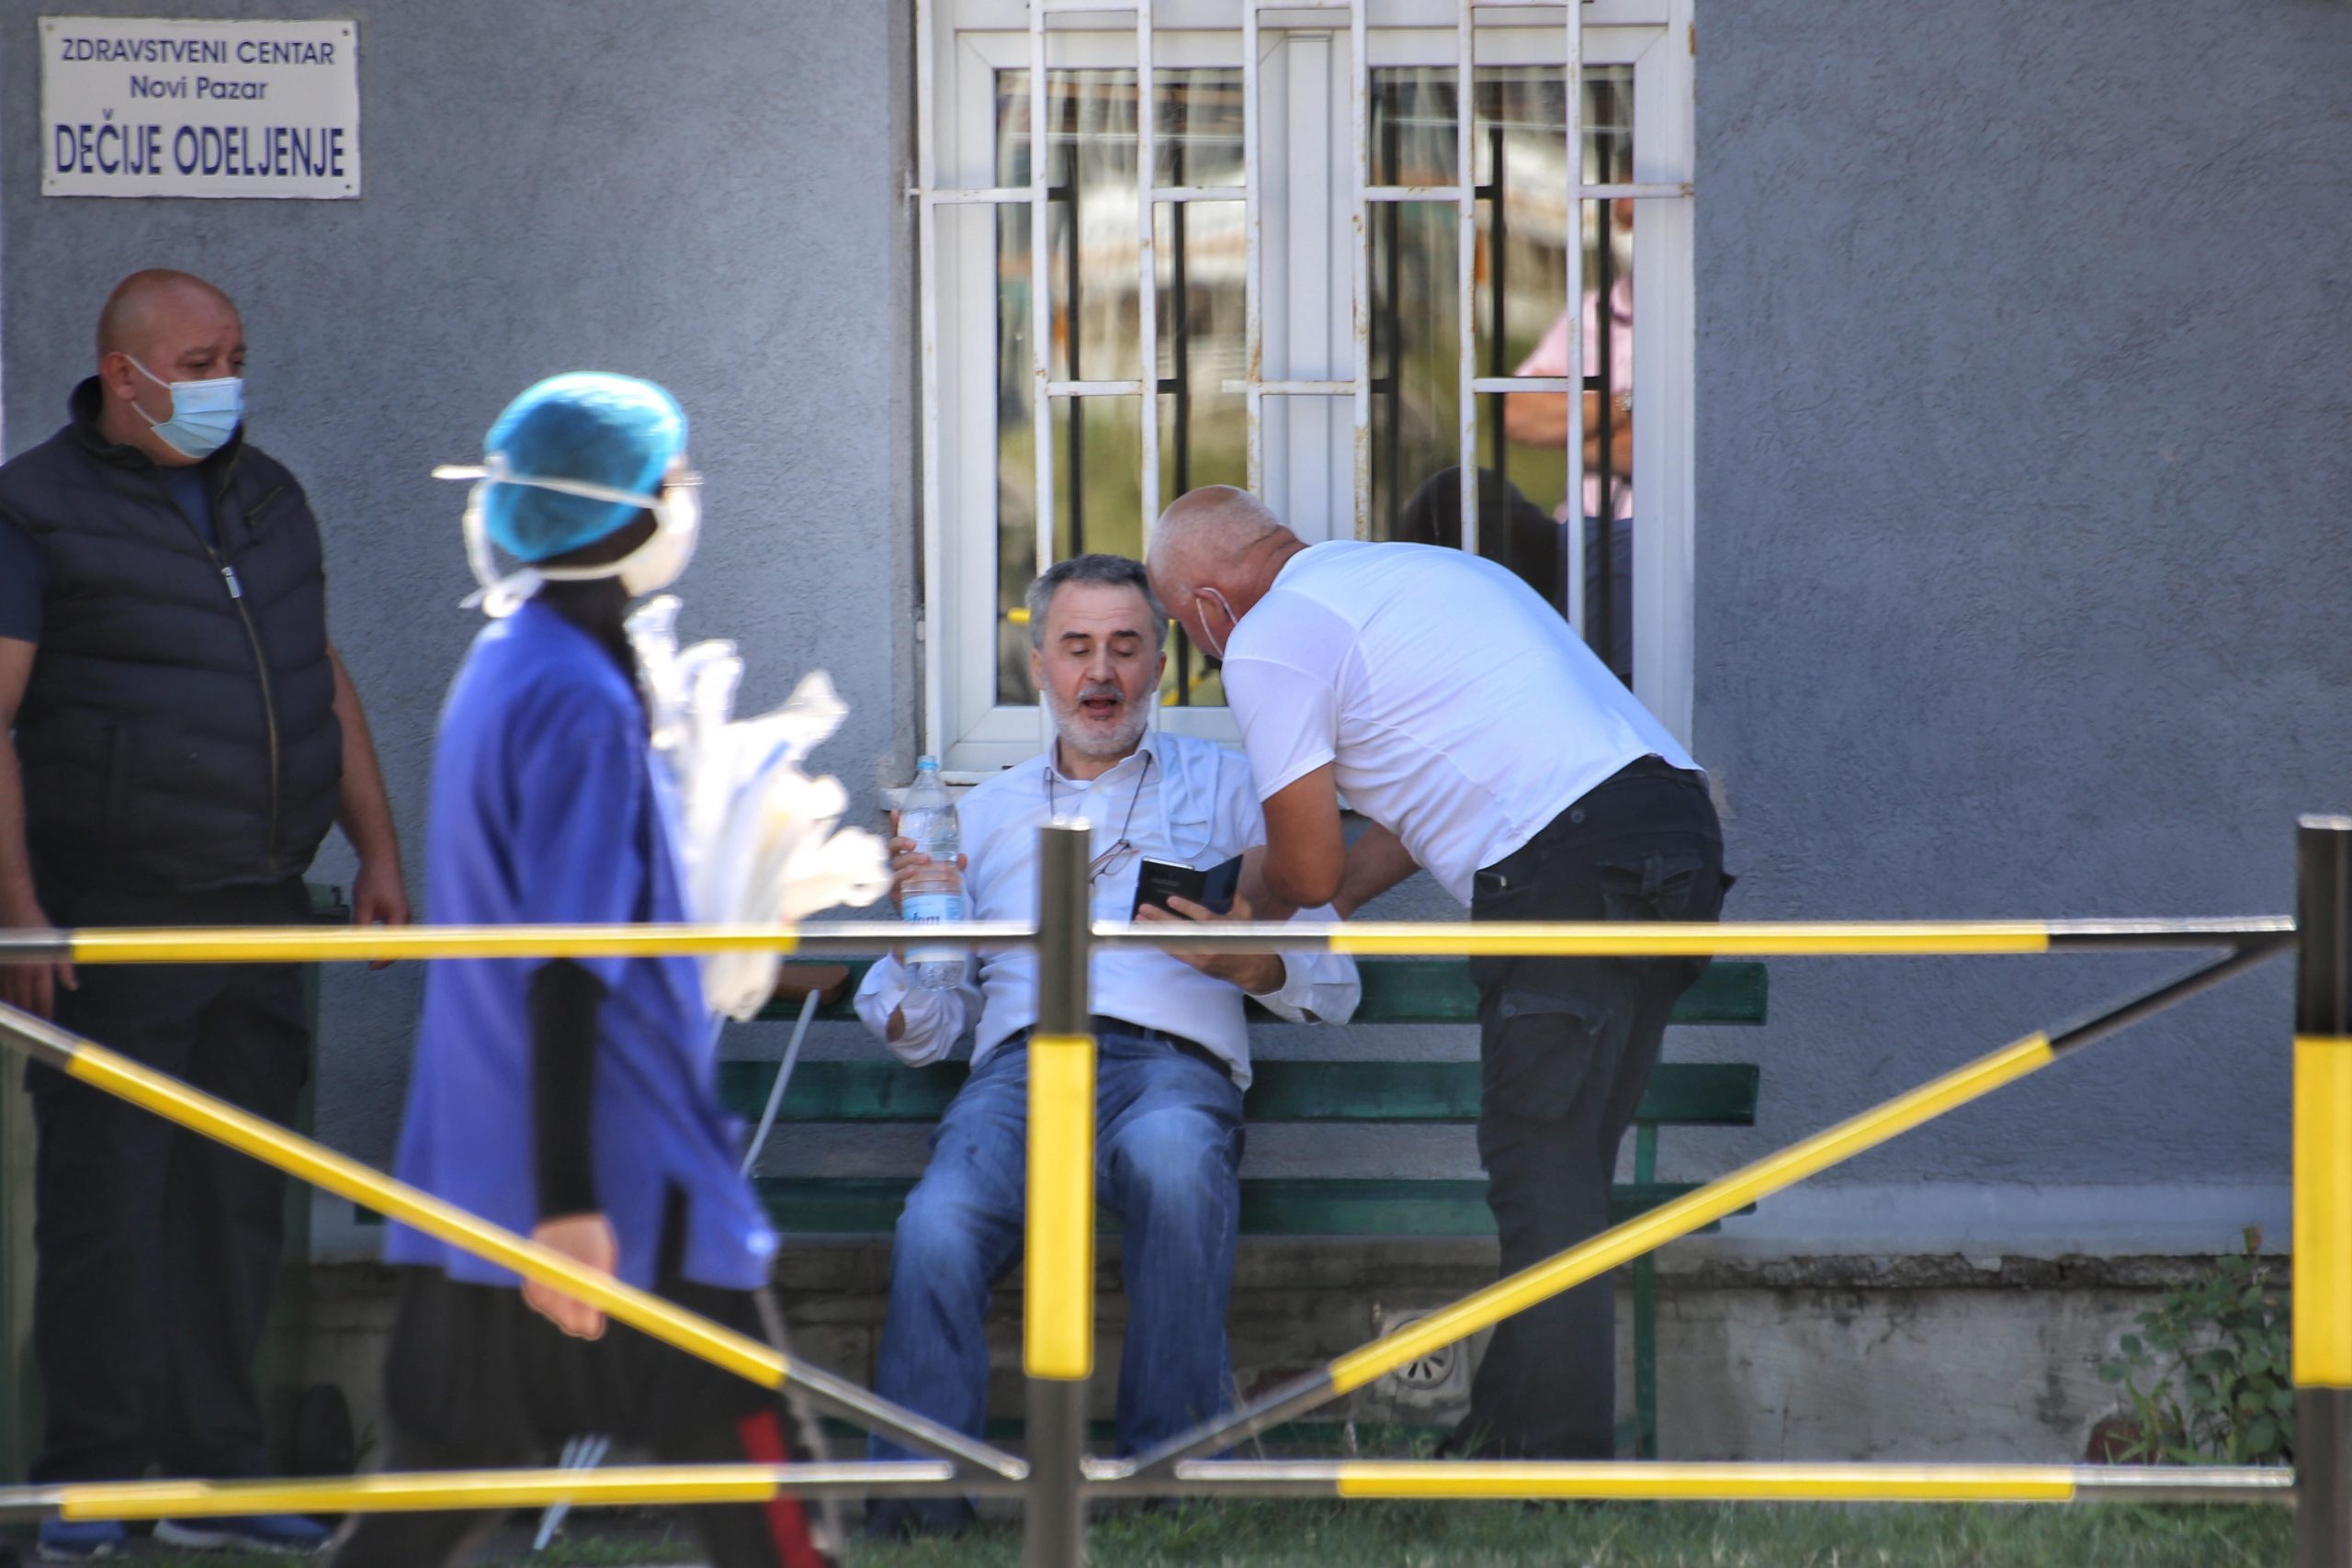 Tenzije oko Opšte bolnice i posle prekida štrajka glađu Novopazarca 1